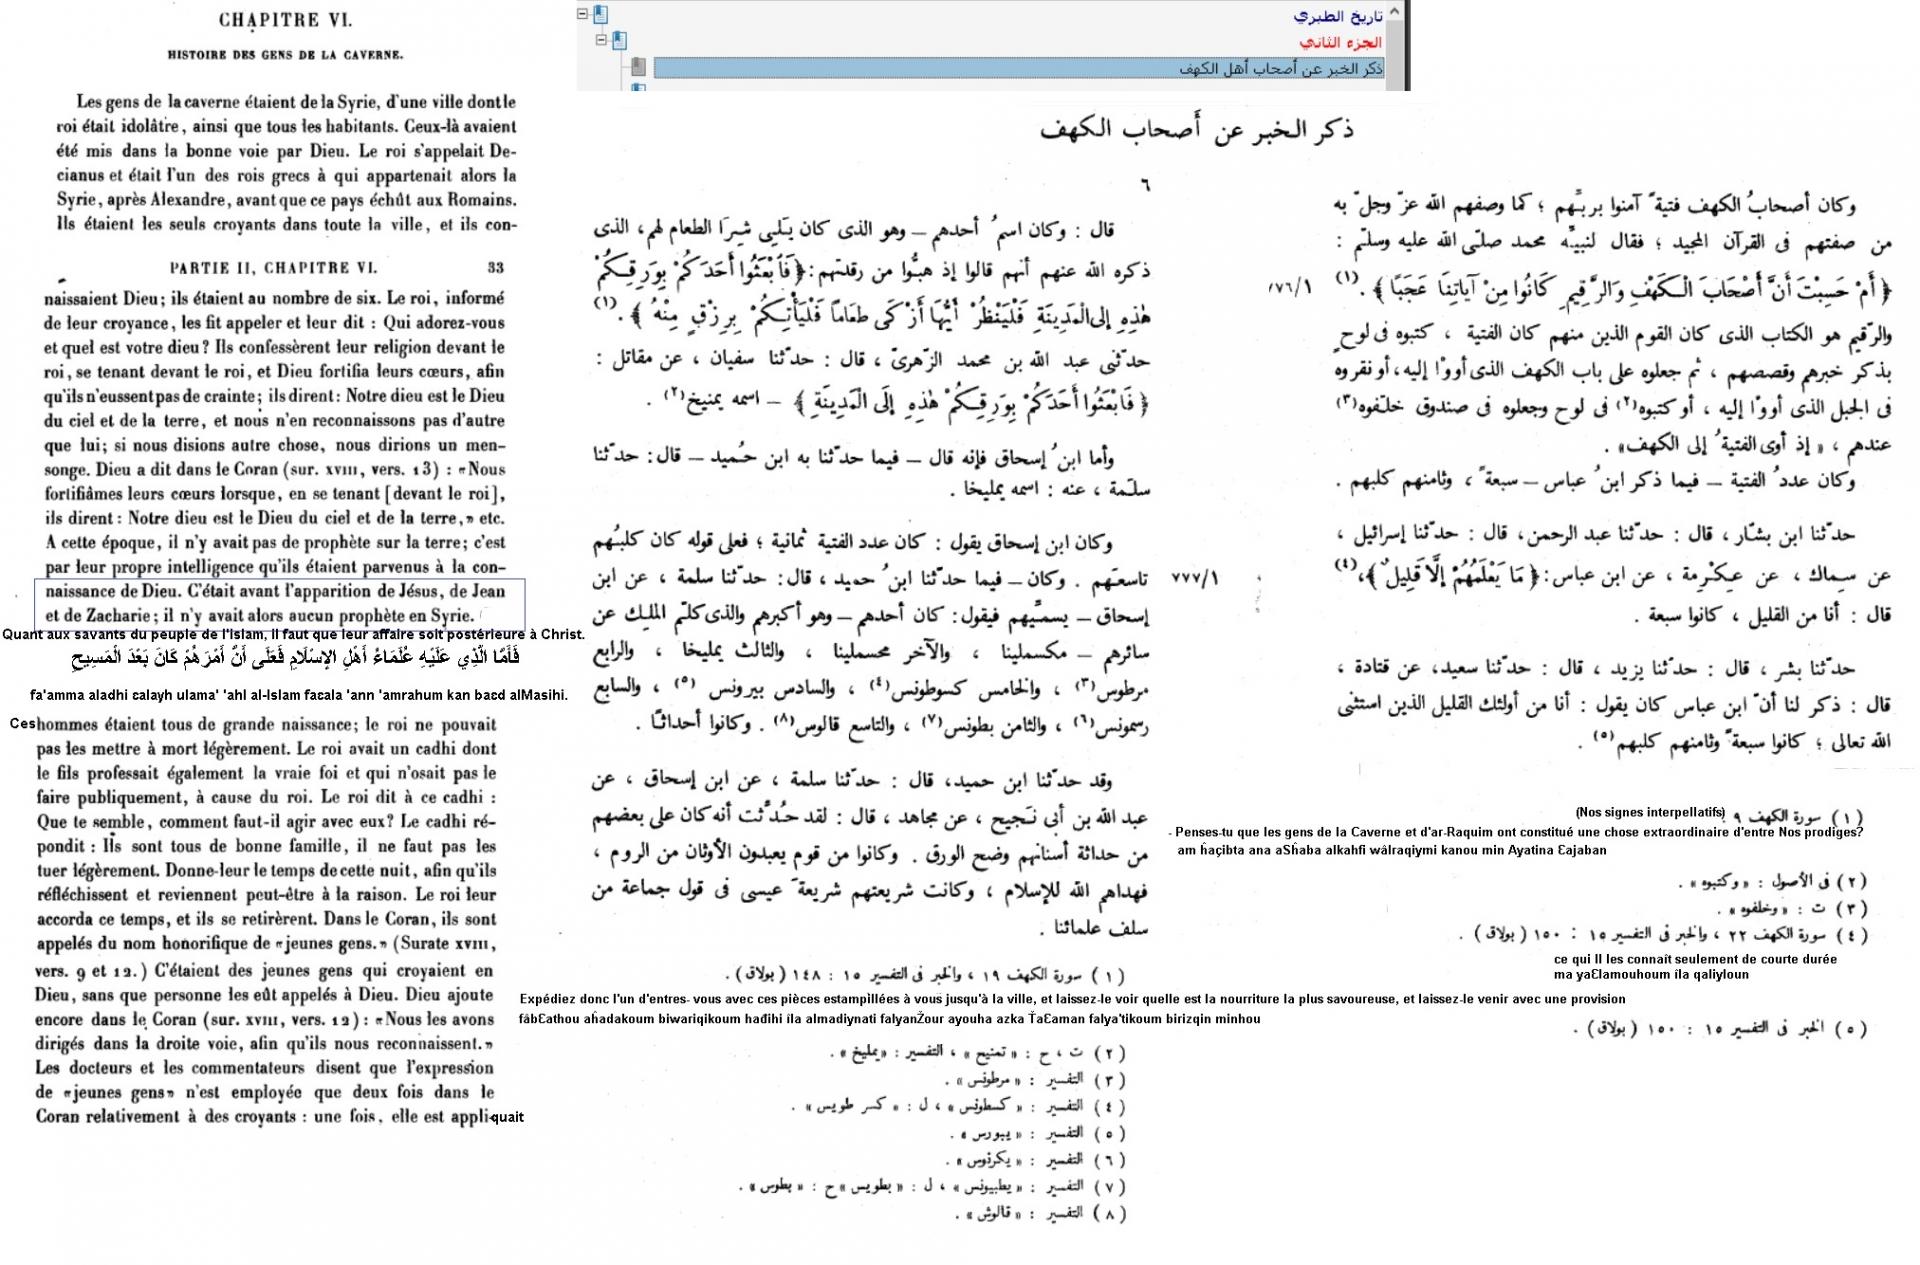 Chronique de tabari t rikh al tabari deuxieme partie pages 6 a 9 raconter l histoire des compagnons de la grotte